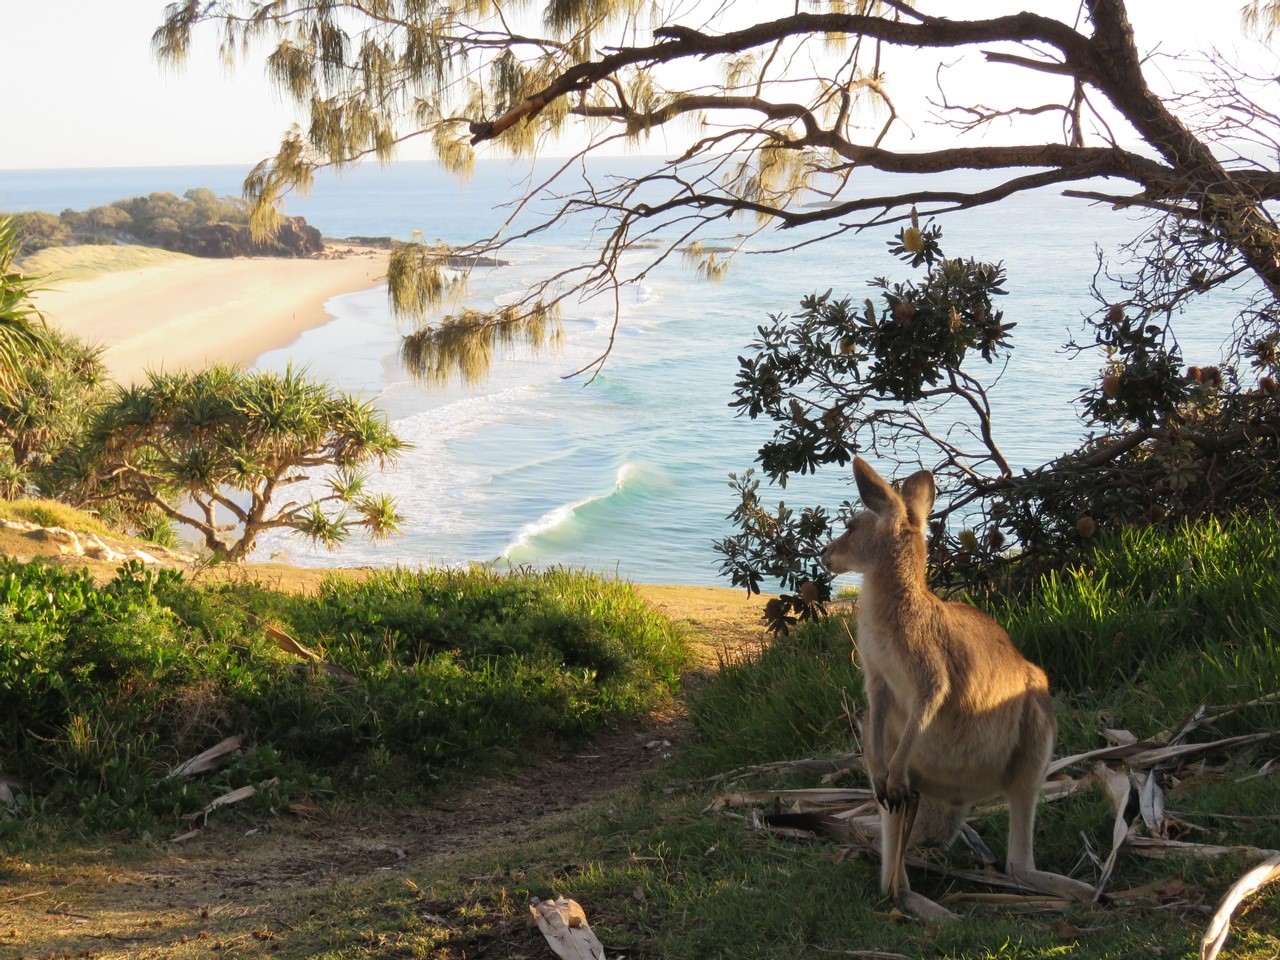 A Kangaroo at Point Lookout, North Stradbroke Island / Minjerribah